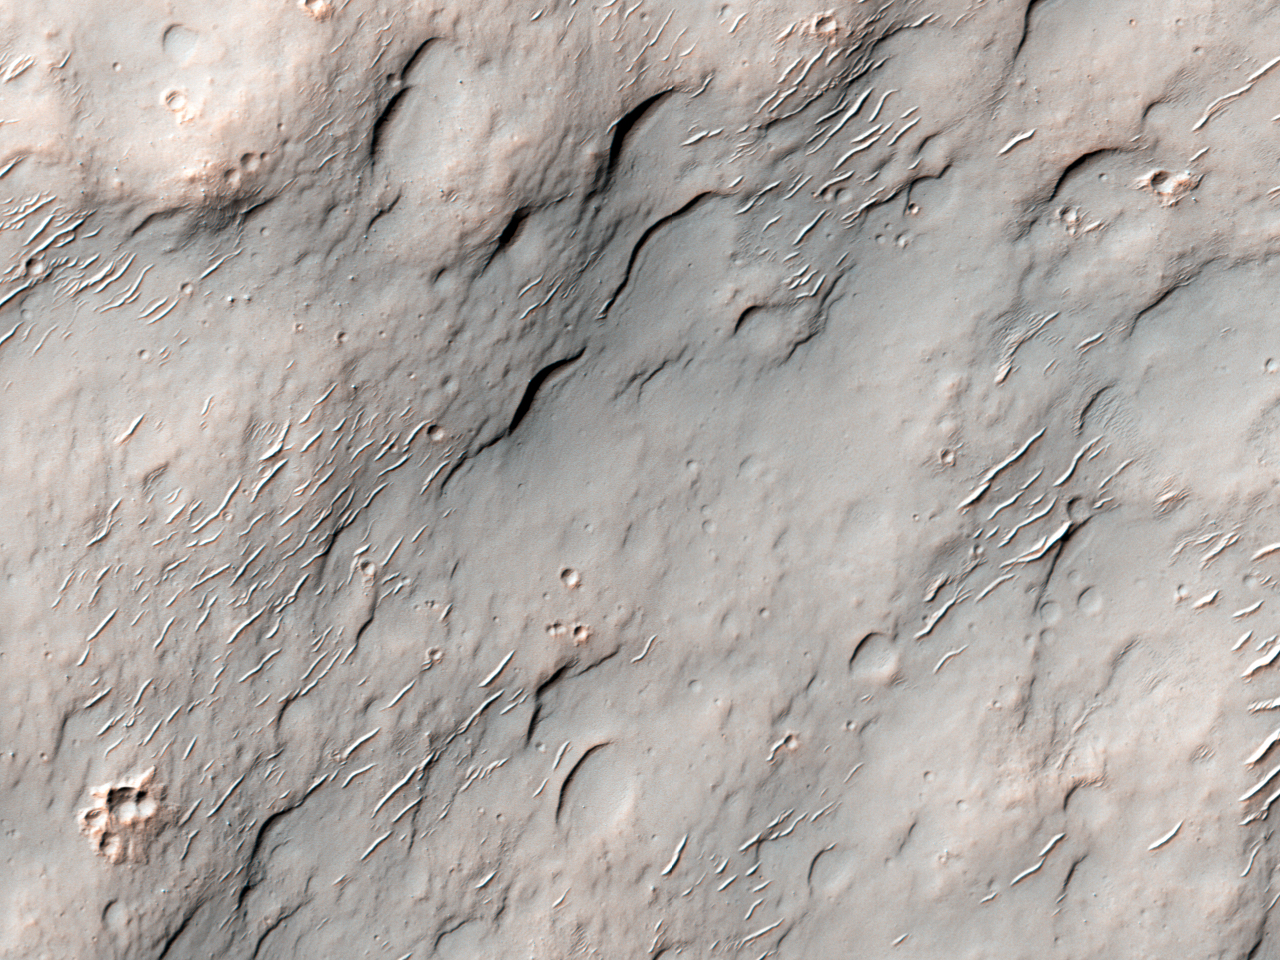 Investigatio possibilis Kaolinitatis prope Crossum Craterem